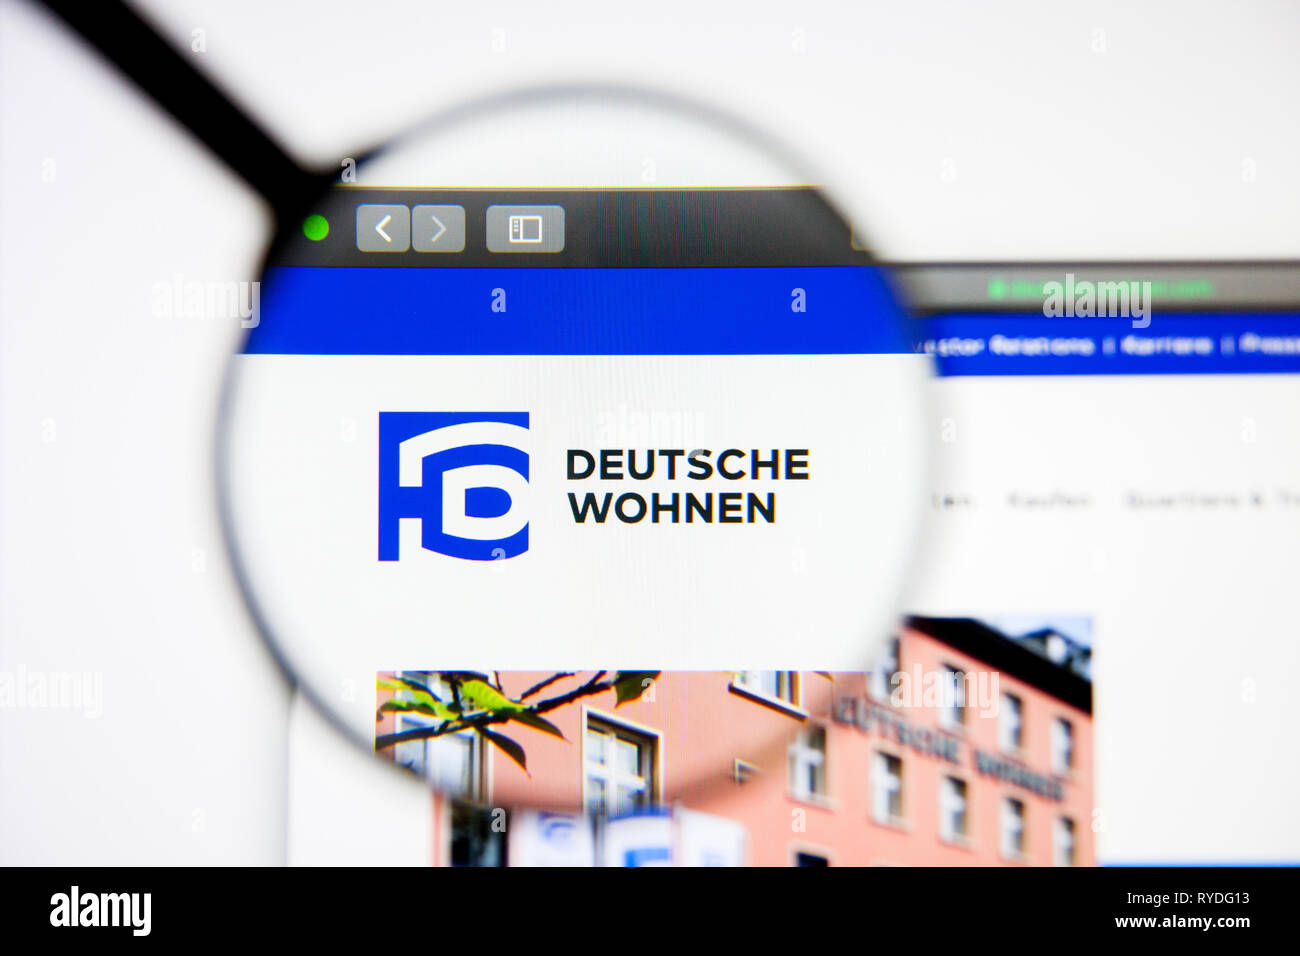 Los Angeles, Kalifornien, USA - 5. März 2019: Die Deutsche Wohnen Homepage. Deutsche Wohnen Logo sichtbar auf dem Display, Illustrative Editorial Stockfoto